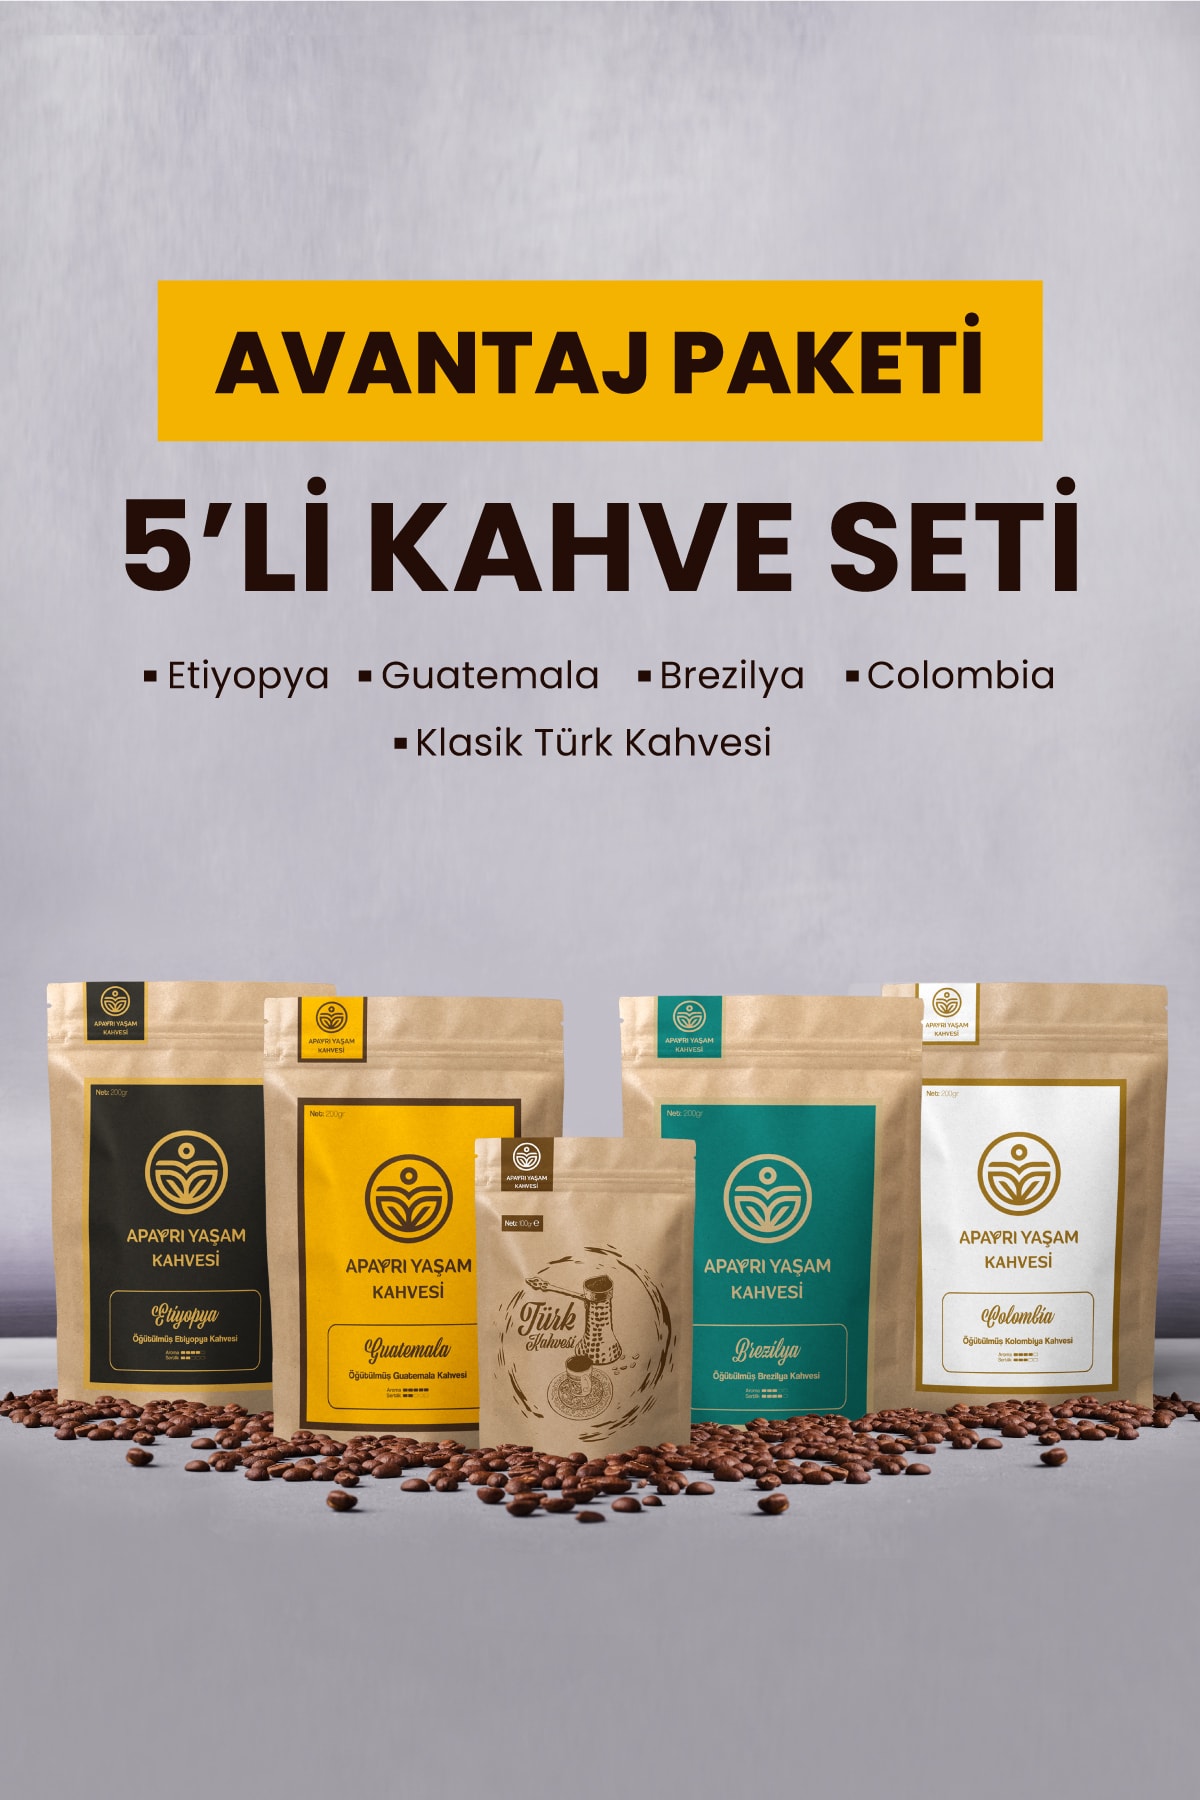 ApAyrı Yaşam 5'li Kahve Seti, Avantaj Paket Filtre Kahve Etiyopya, Guatemala, Brezilya, Kolombiya, Türk Kahvesi